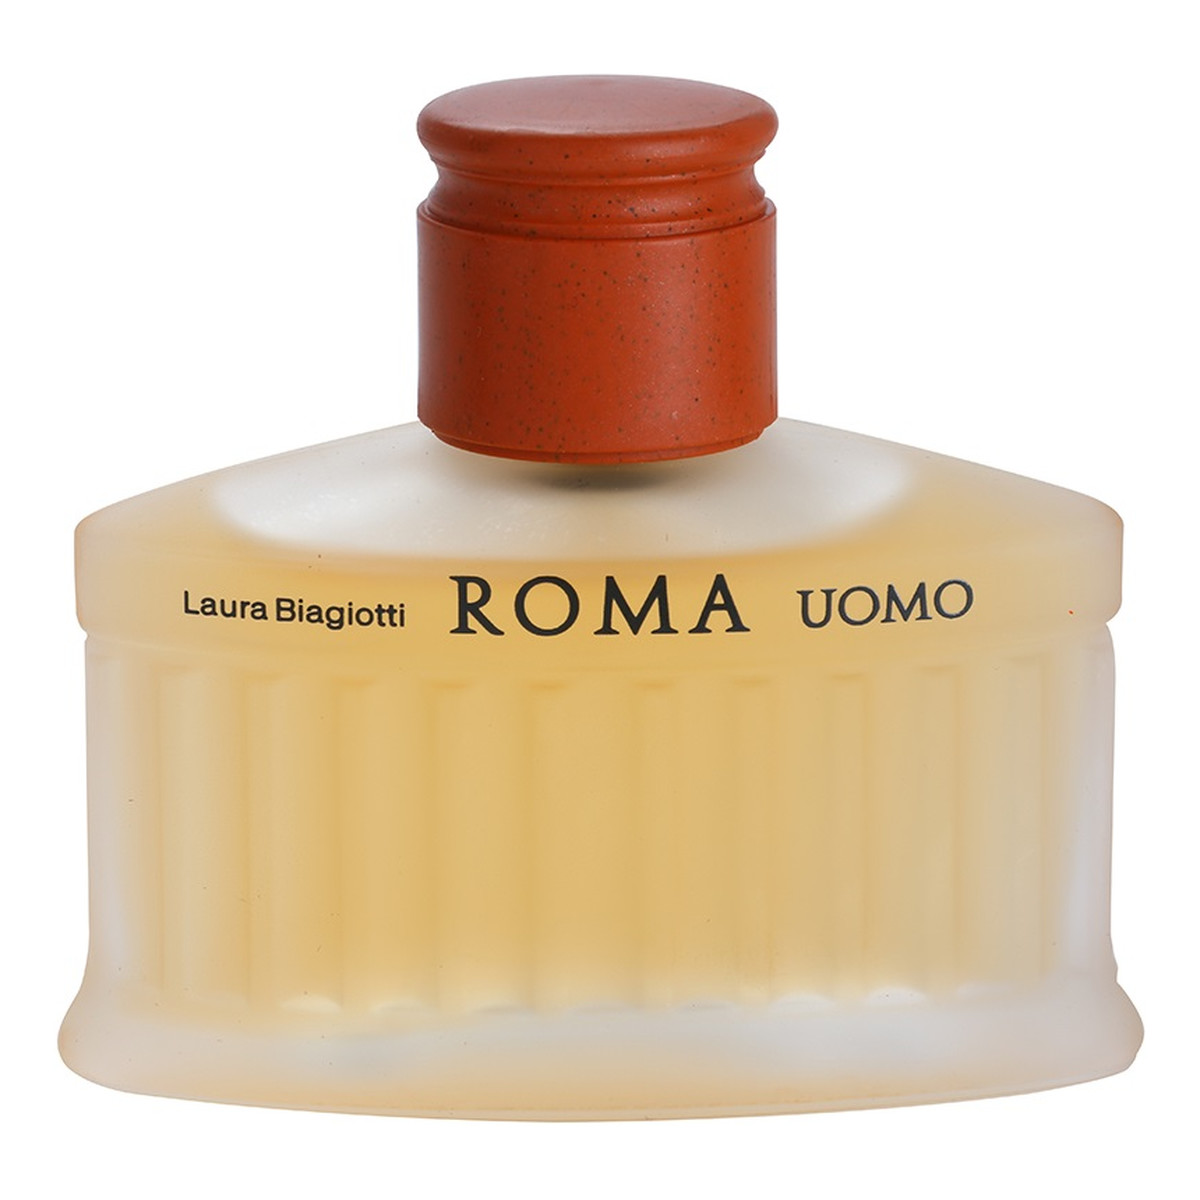 Laura Biagiotti ROMA UOMO woda toaletowa dla mężczyzn 40ml